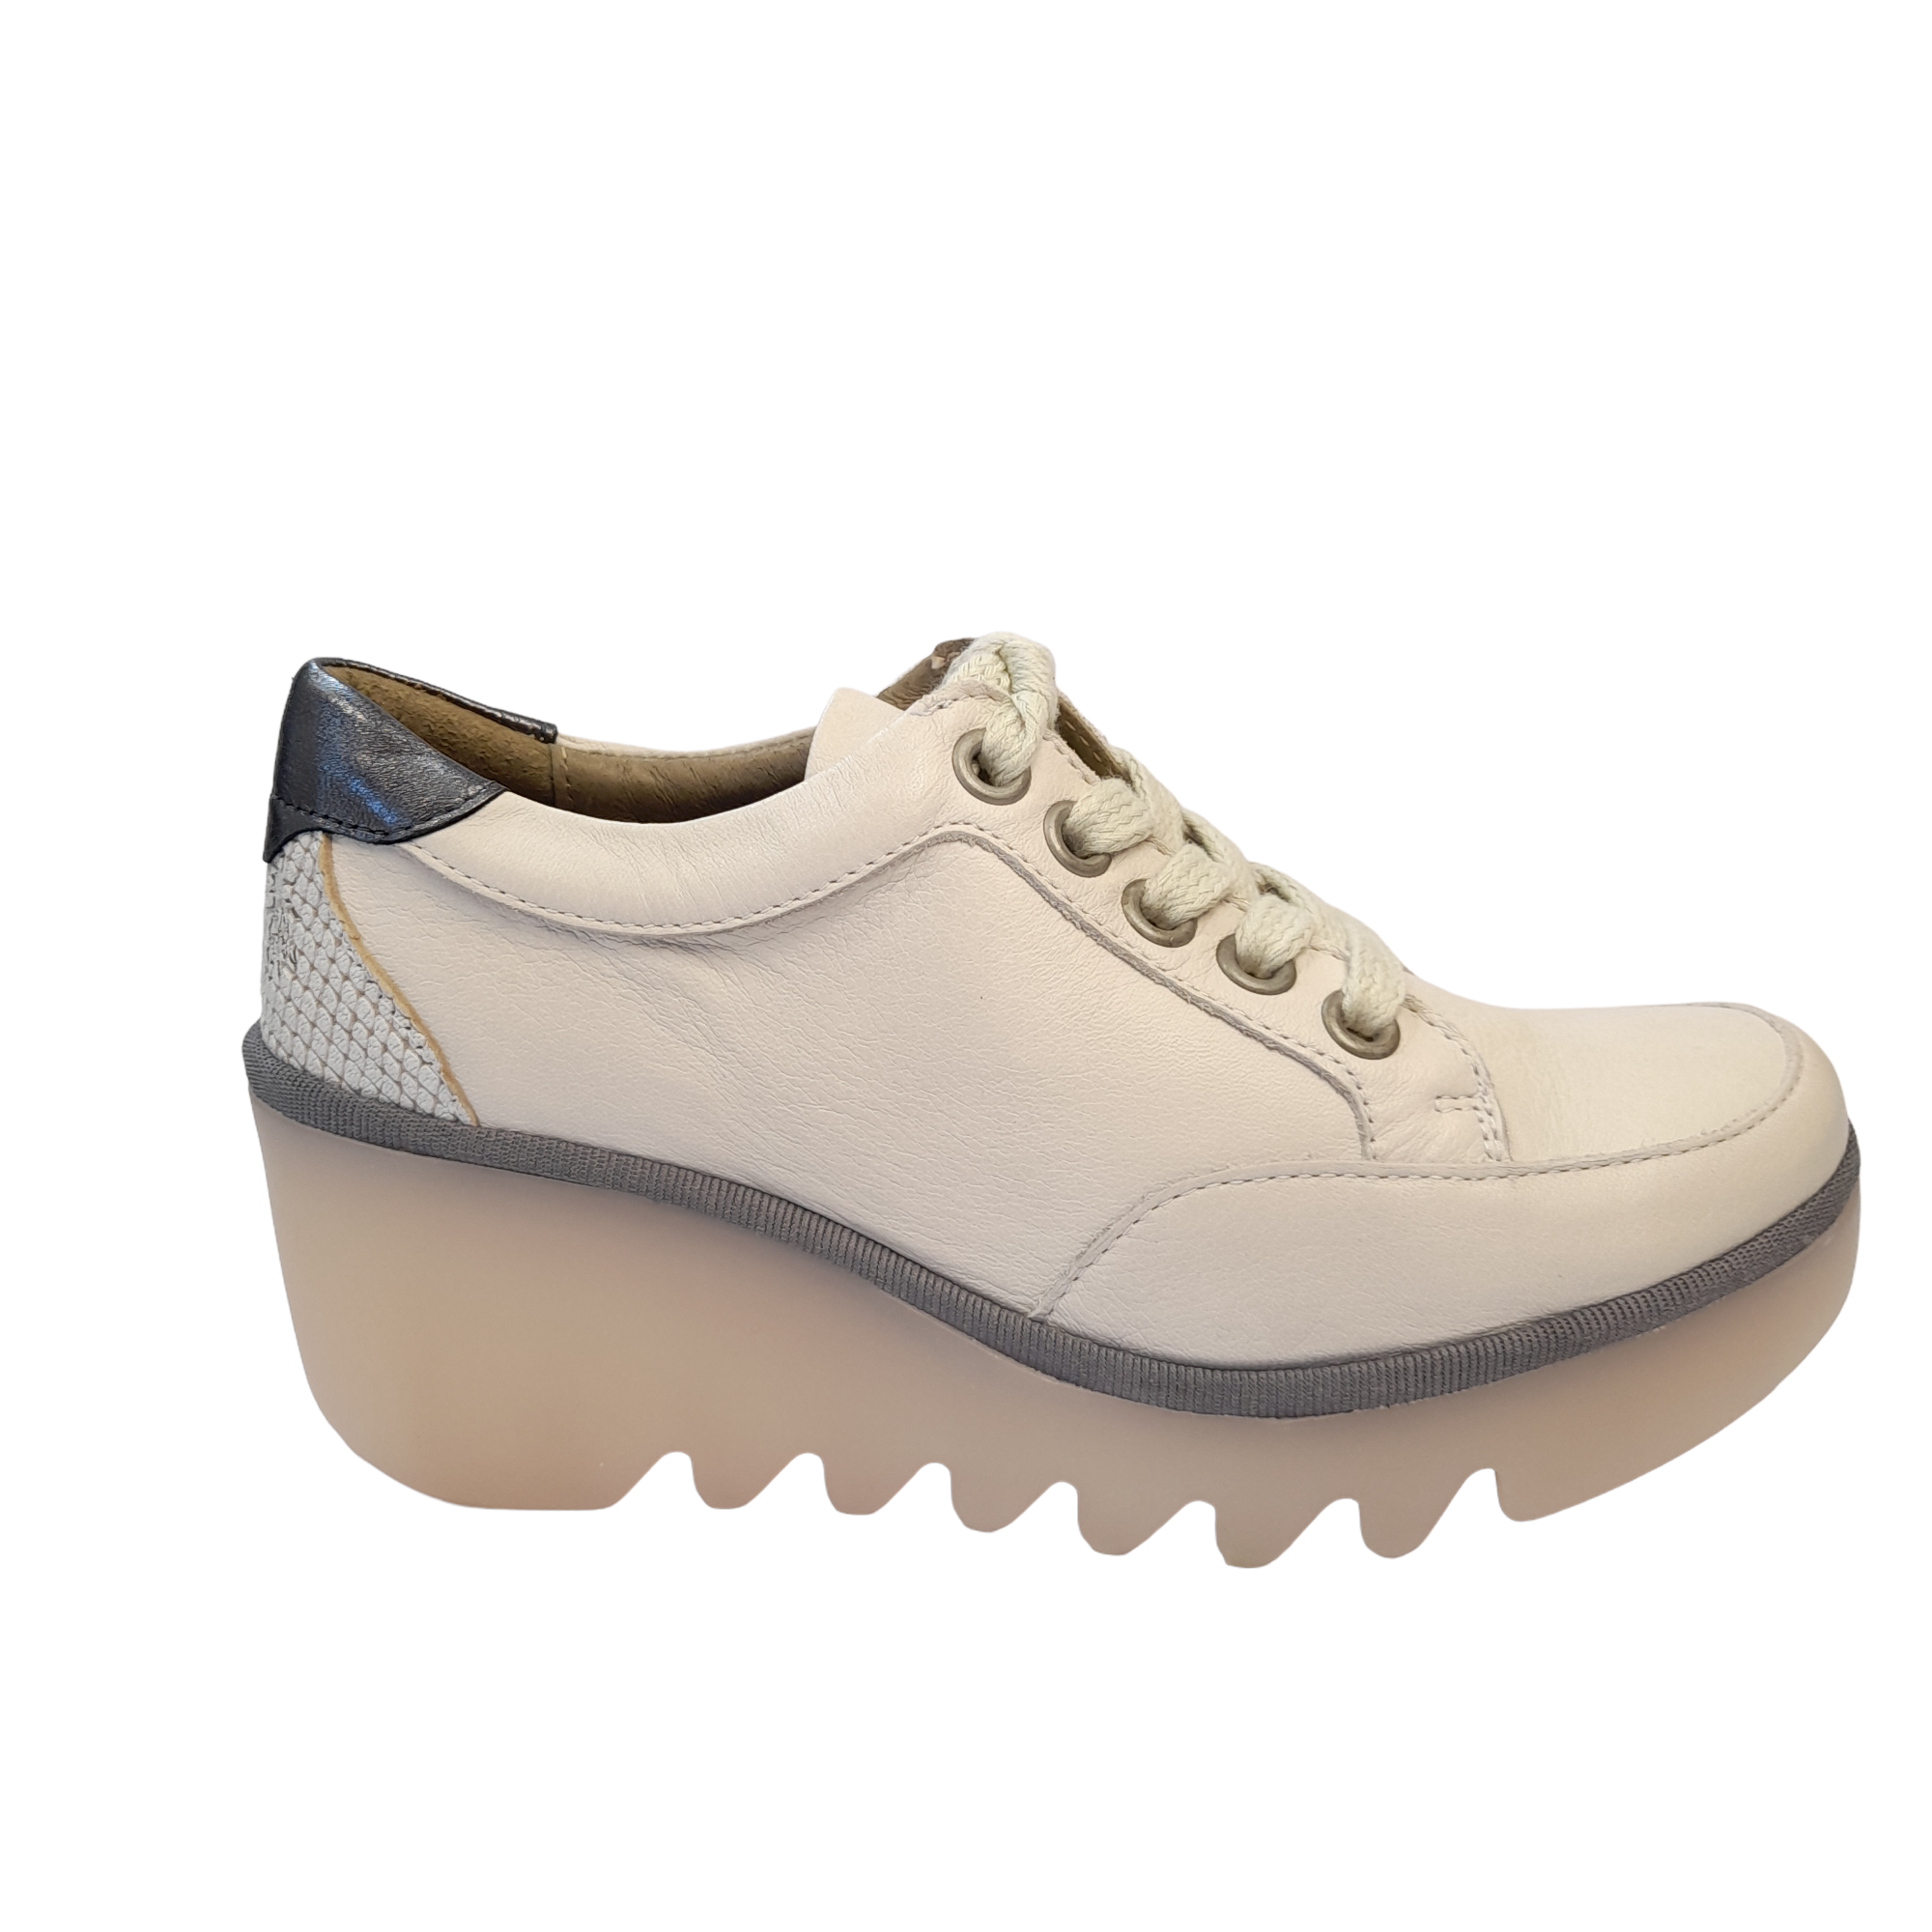 FLW22-Bino - shoe&me - Fly London - Sneaker - Shoes, Sneakers, Wedges, Winter 2022, Womens